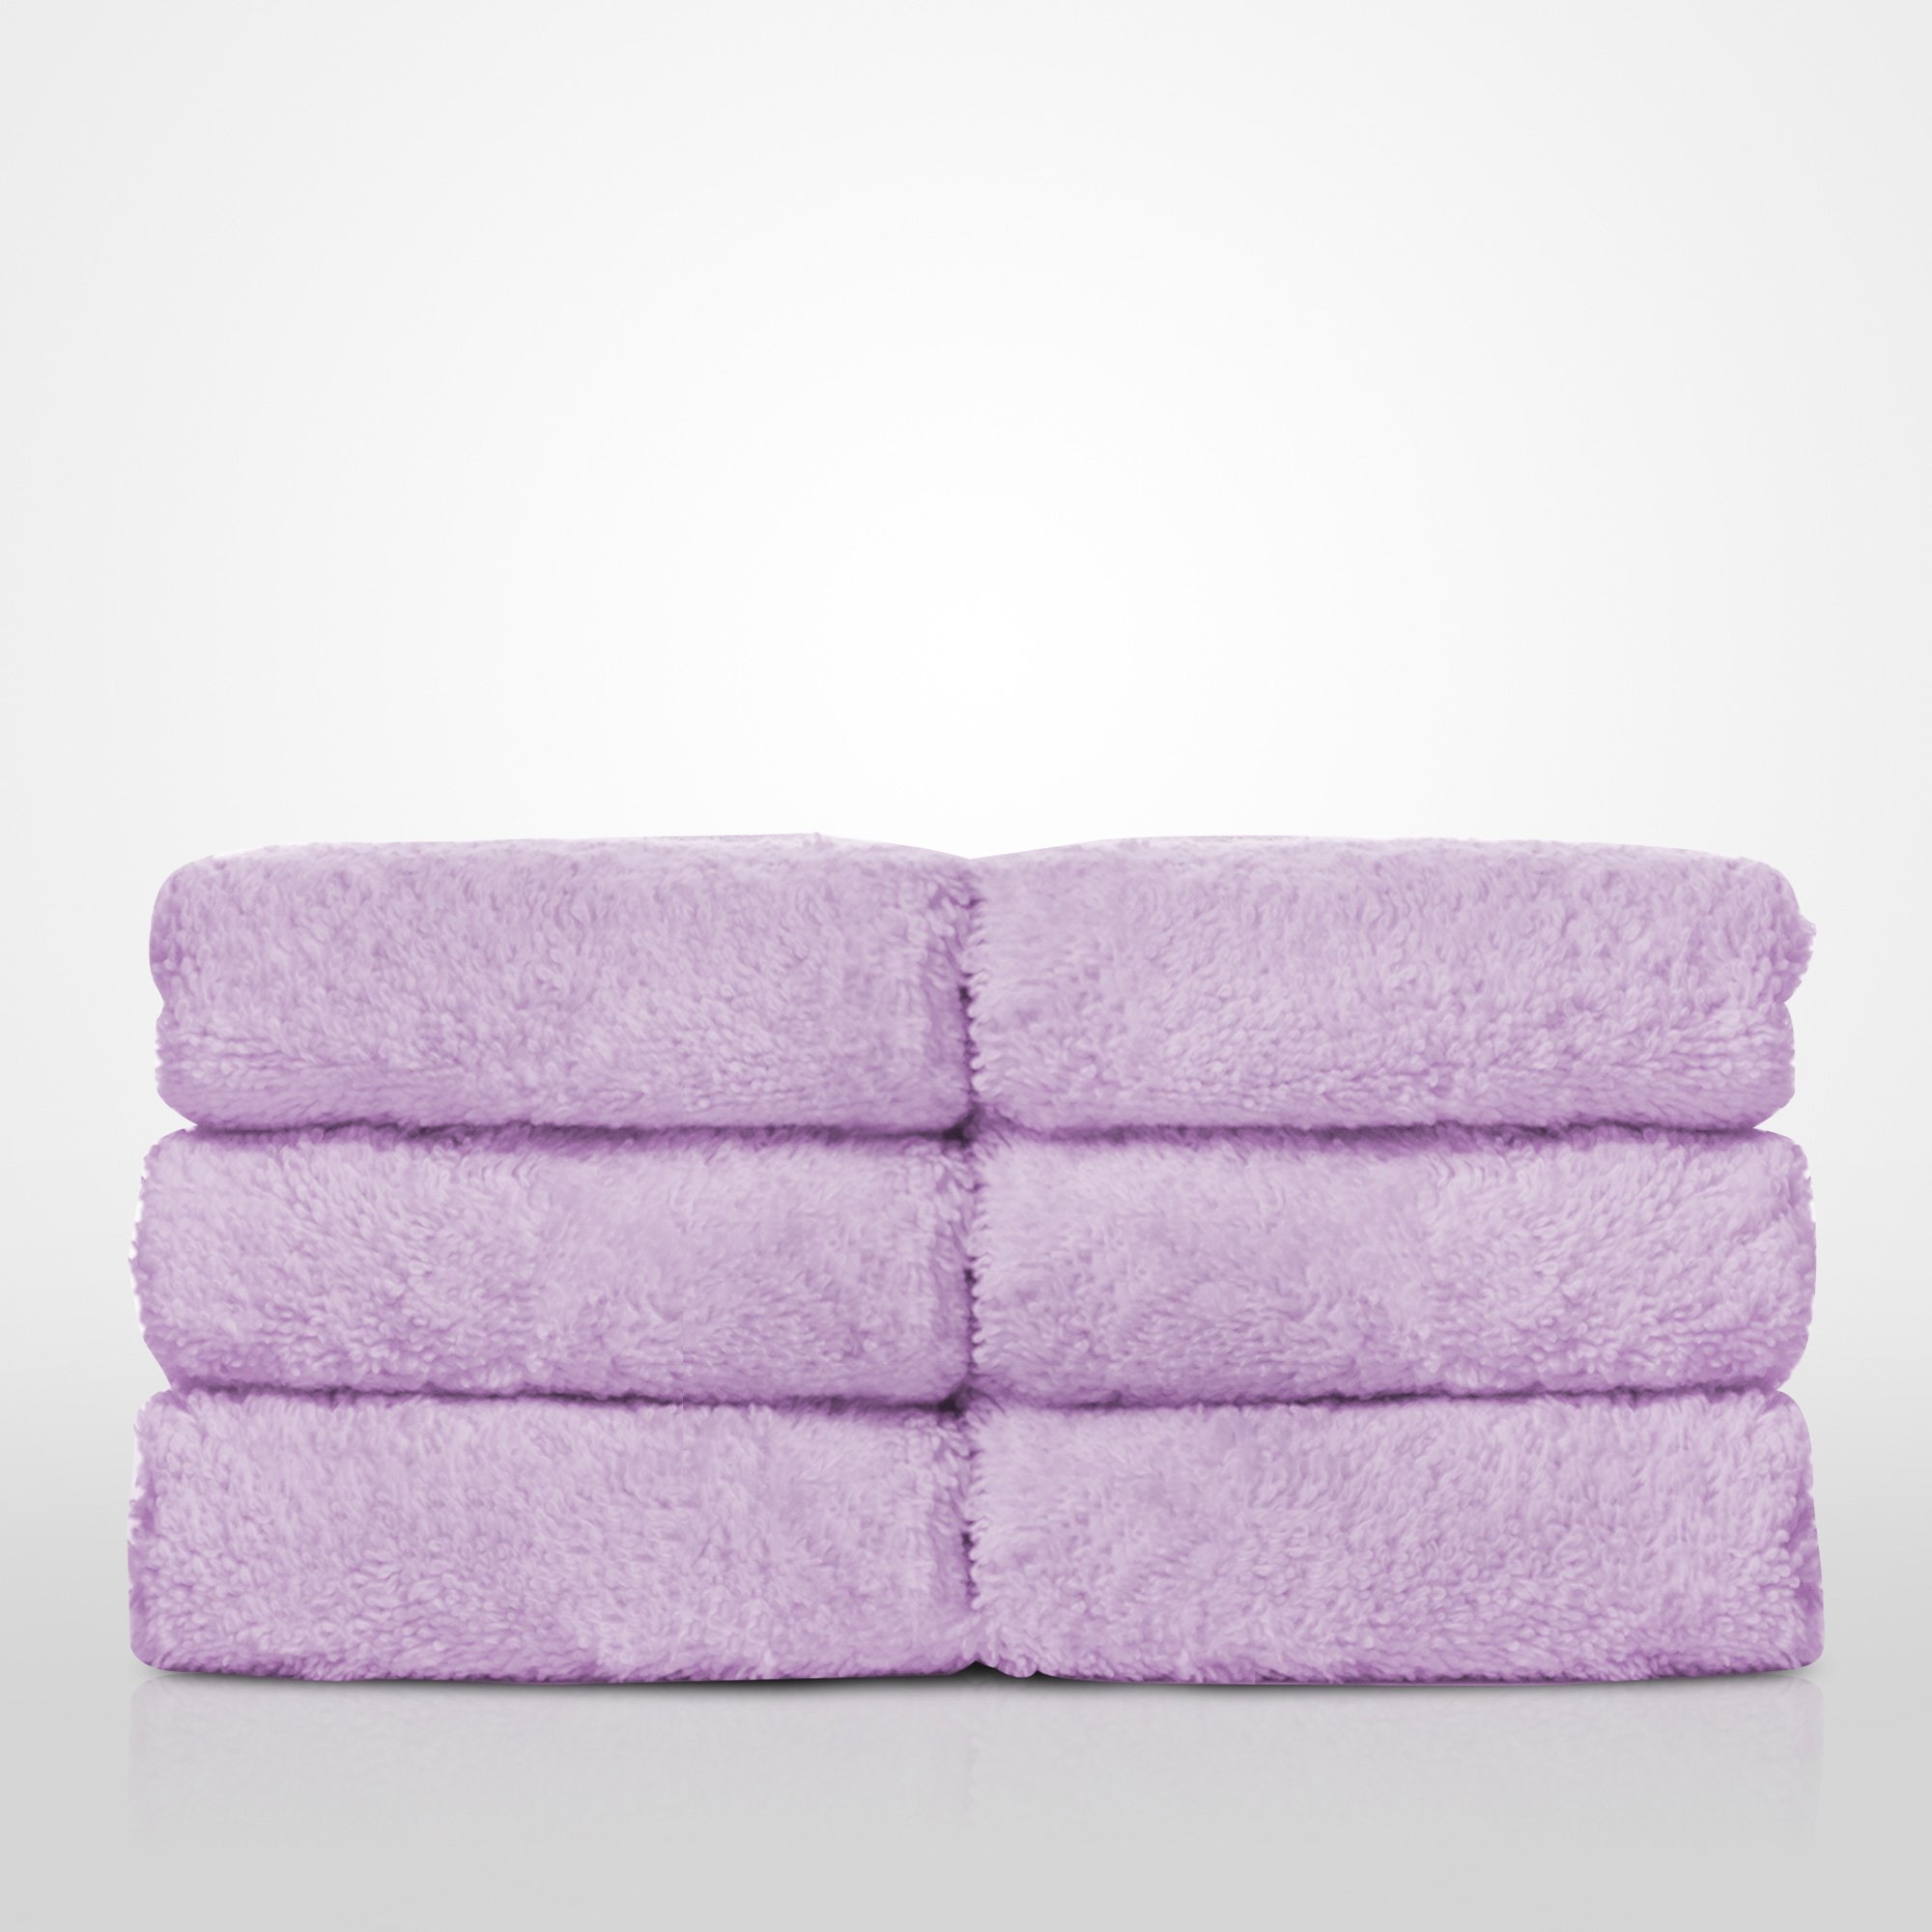 13" x 13" - 100% Turkish Cotton Lavender Terry Washcloth  - 12 Pack (Dozen)-Robemart.com